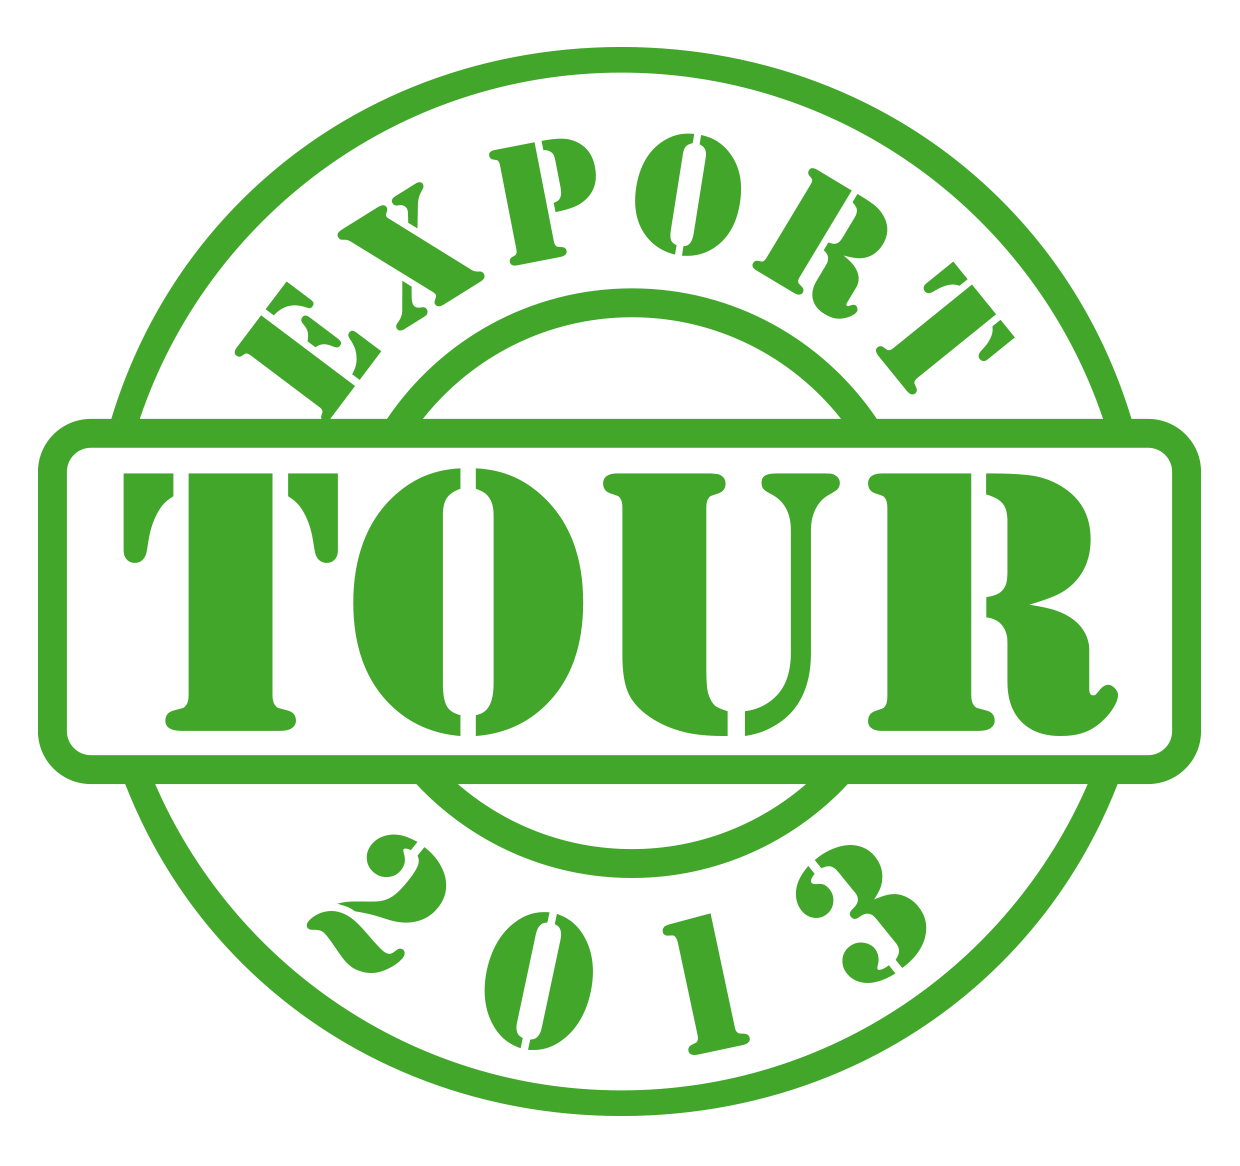 Export Tour 2013